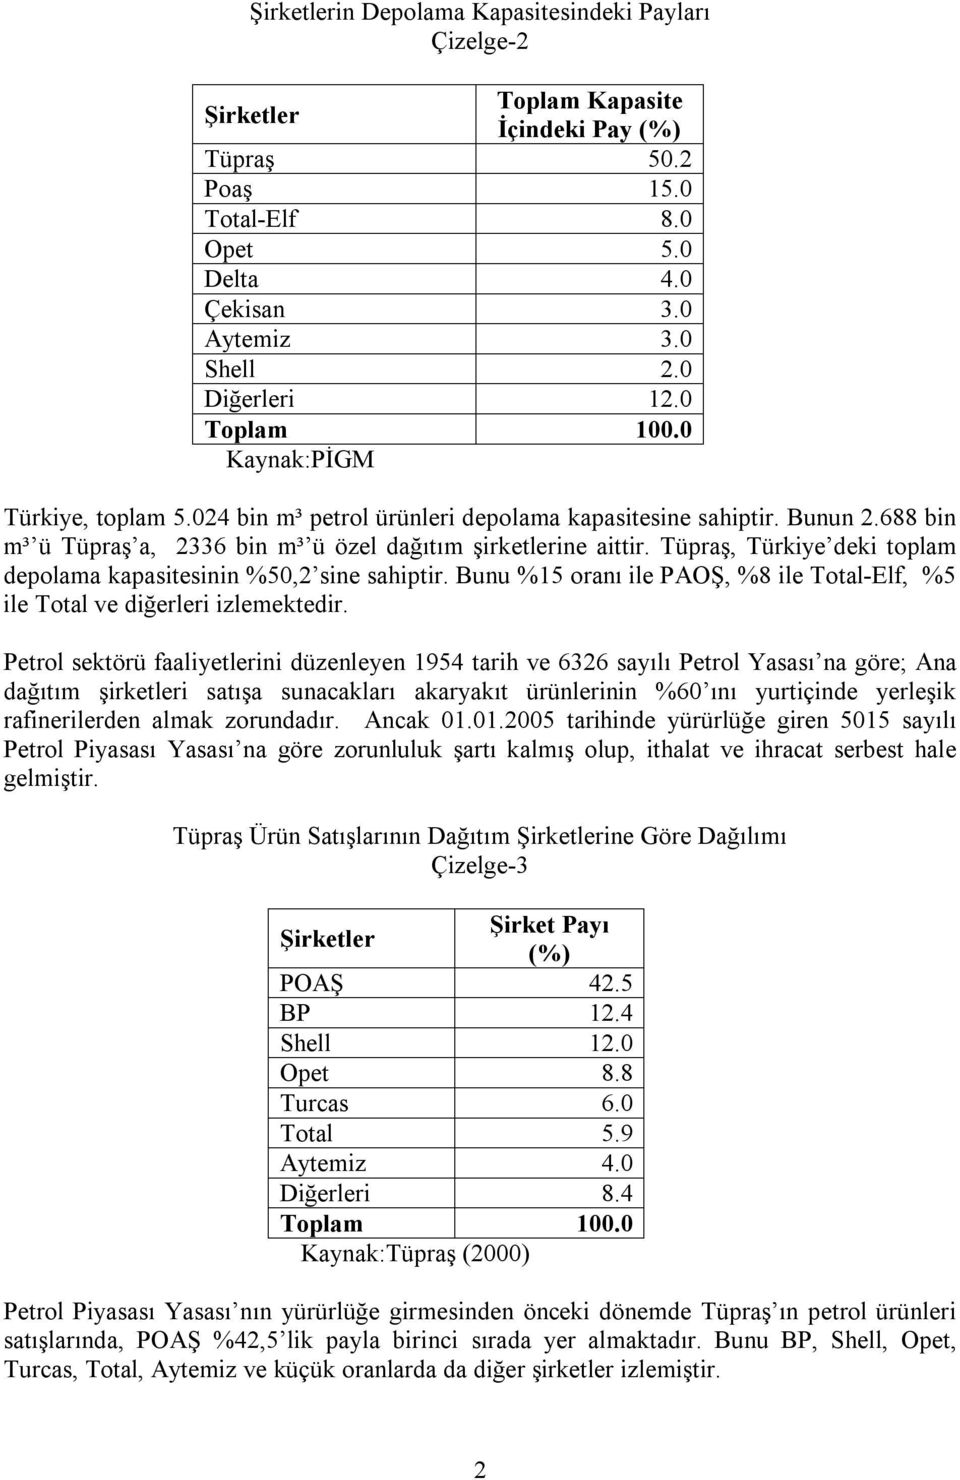 Tüpraş, Türkiye deki toplam depolama kapasitesinin %50,2 sine sahiptir. Bunu %15 oranı ile PAOŞ, %8 ile Total-Elf, %5 ile Total ve diğerleri izlemektedir.